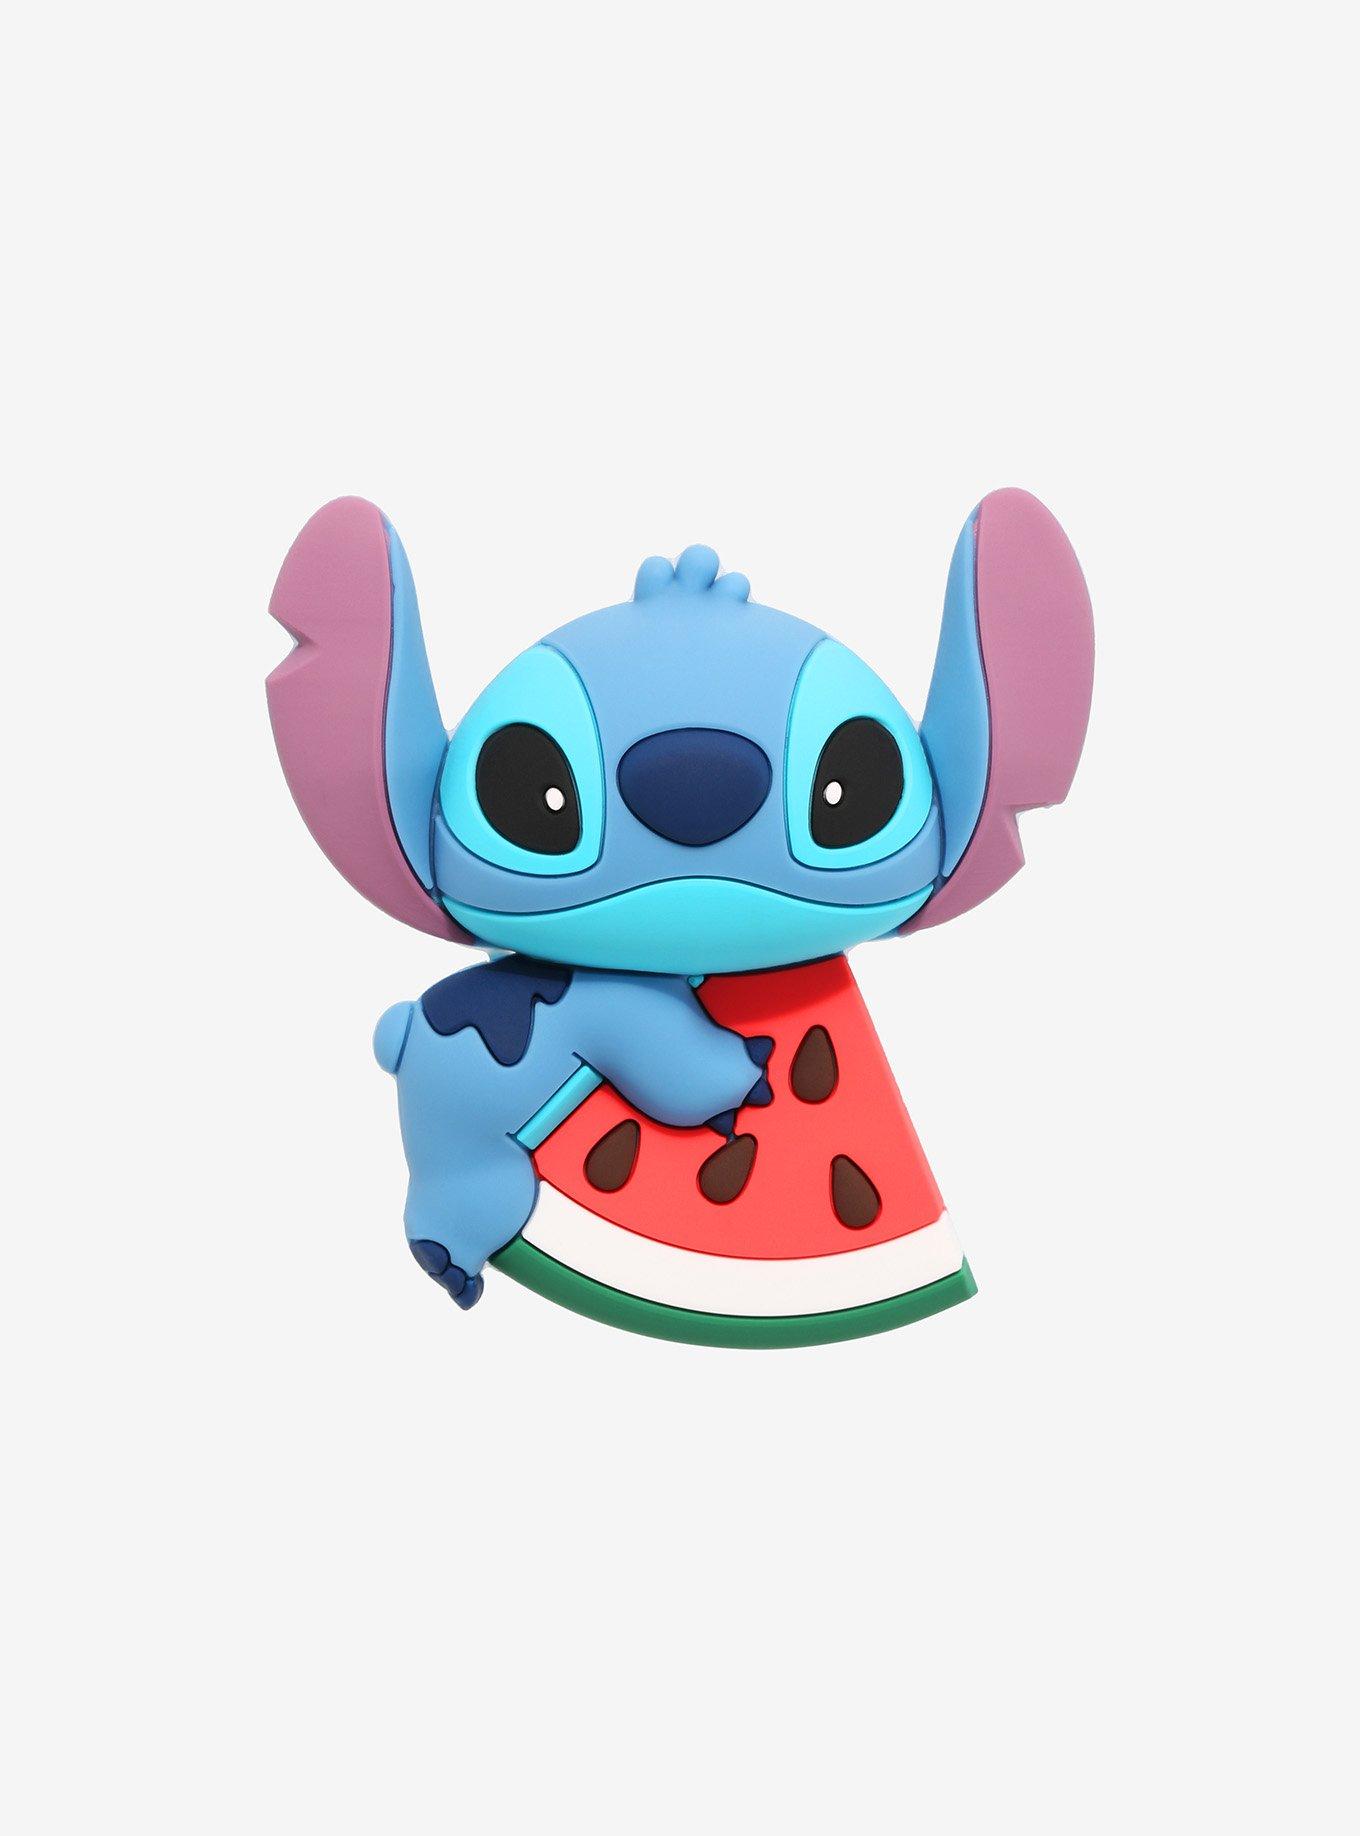 Disney Lilo & Stitch Watermelon Figural Magnet